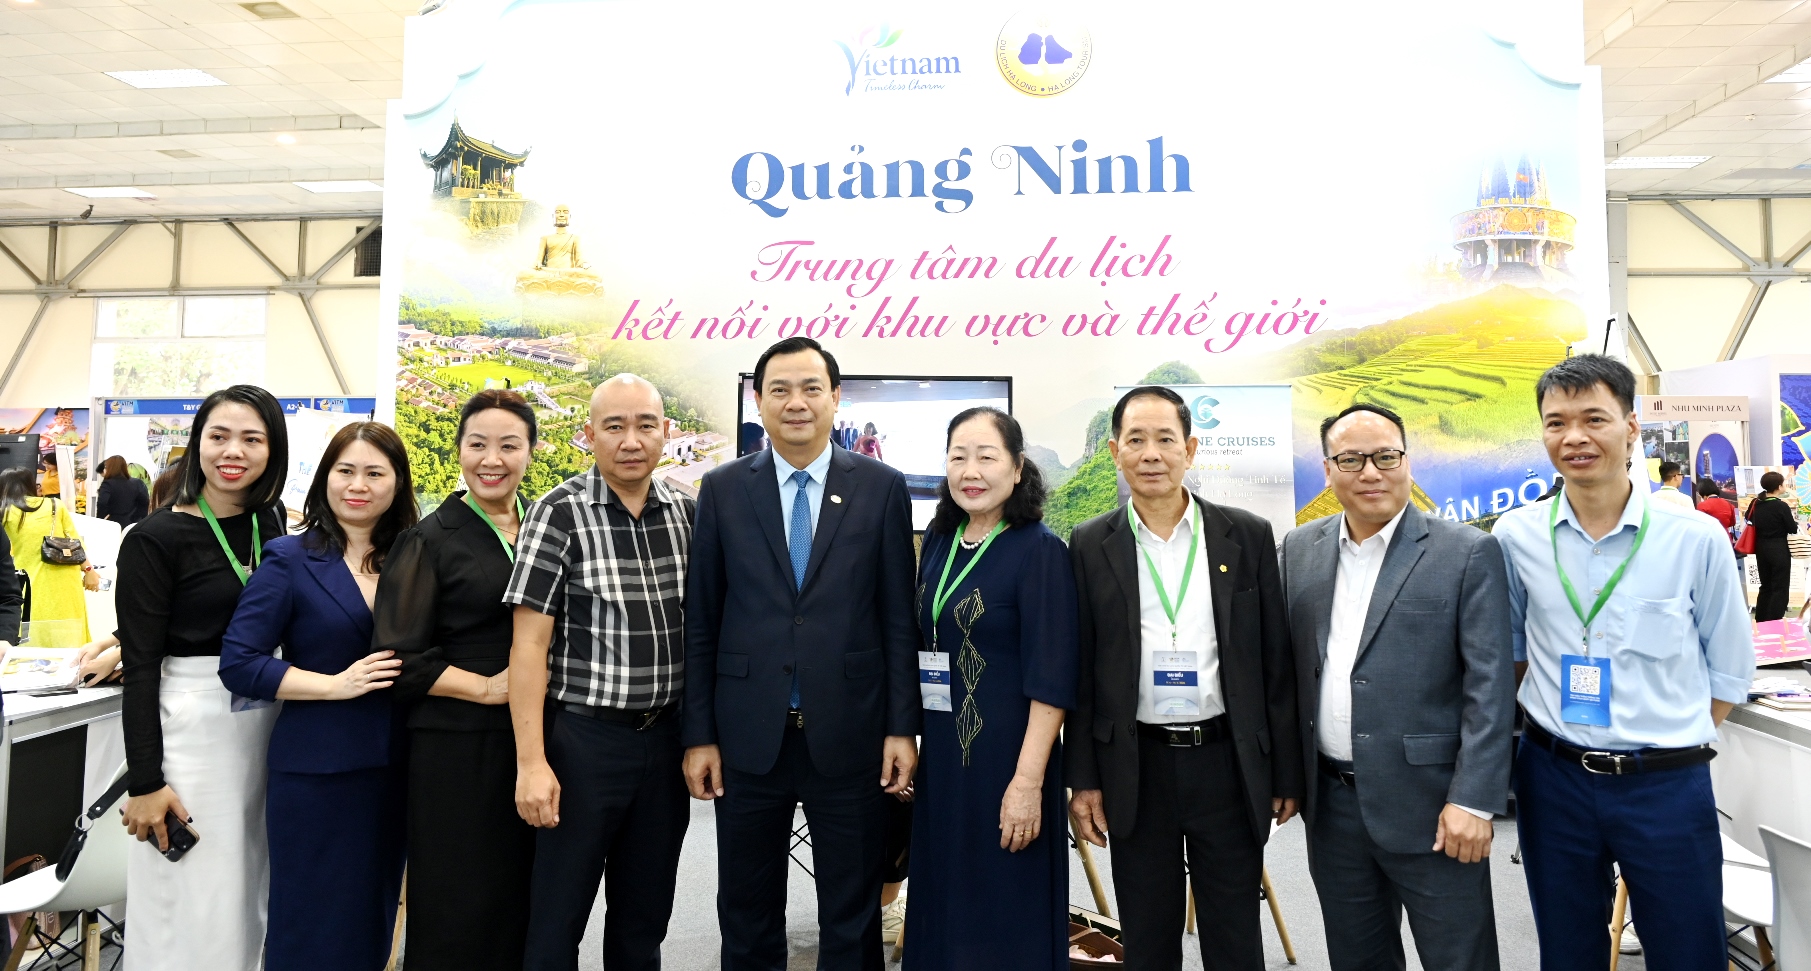 Cục trưởng Cục Du lịch quốc gia Việt Nam Nguyễn Trùng Khánh chụp ảnh tại gian hảng Quảng Ninh